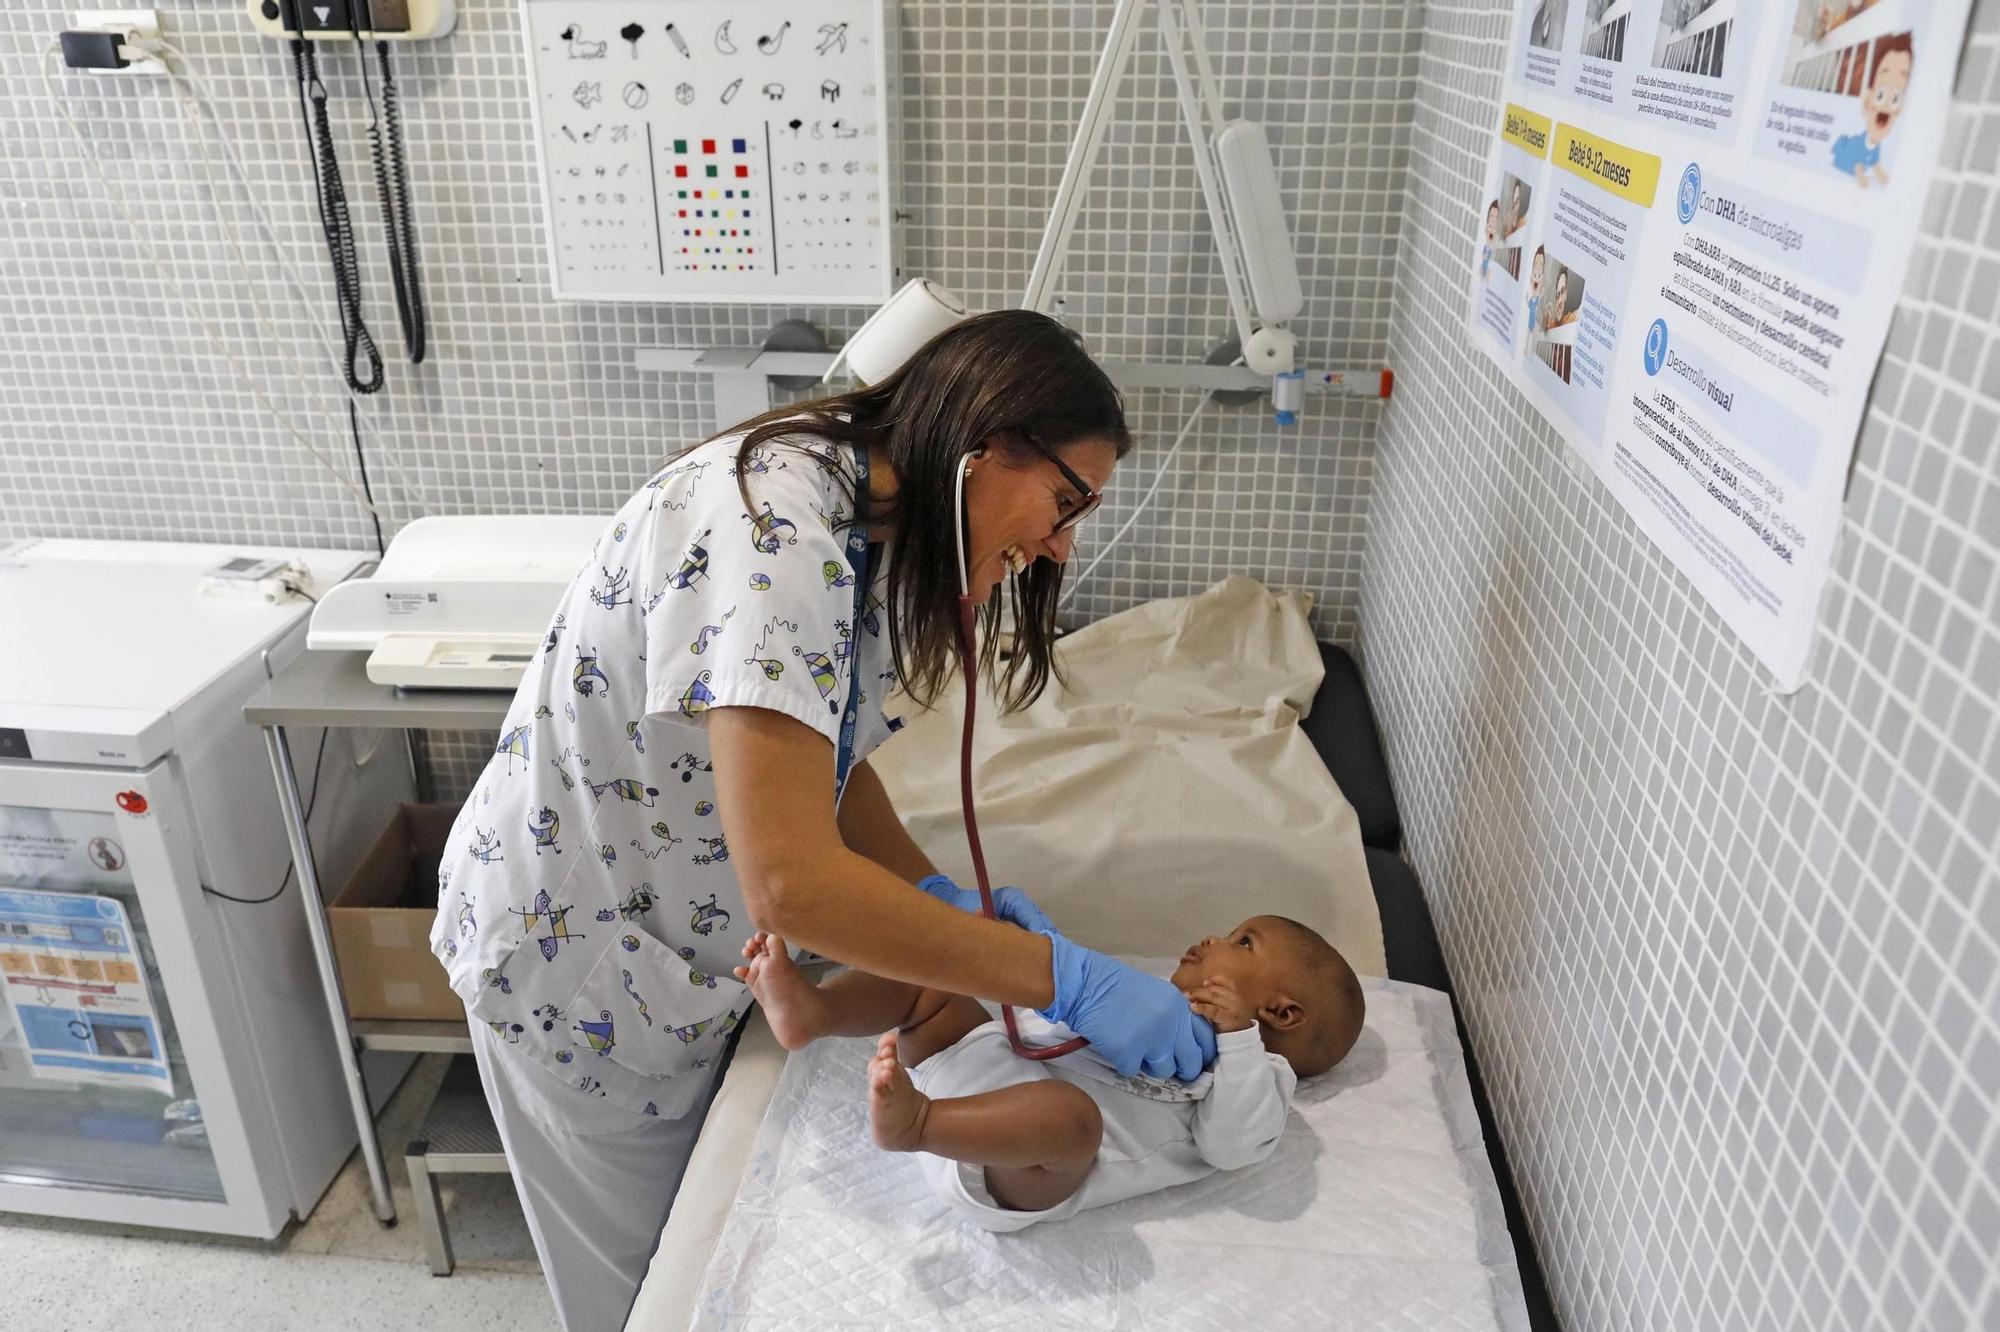 Més de 6.000 nadons gironins rebran la vacuna per evitar la bronquiolitis